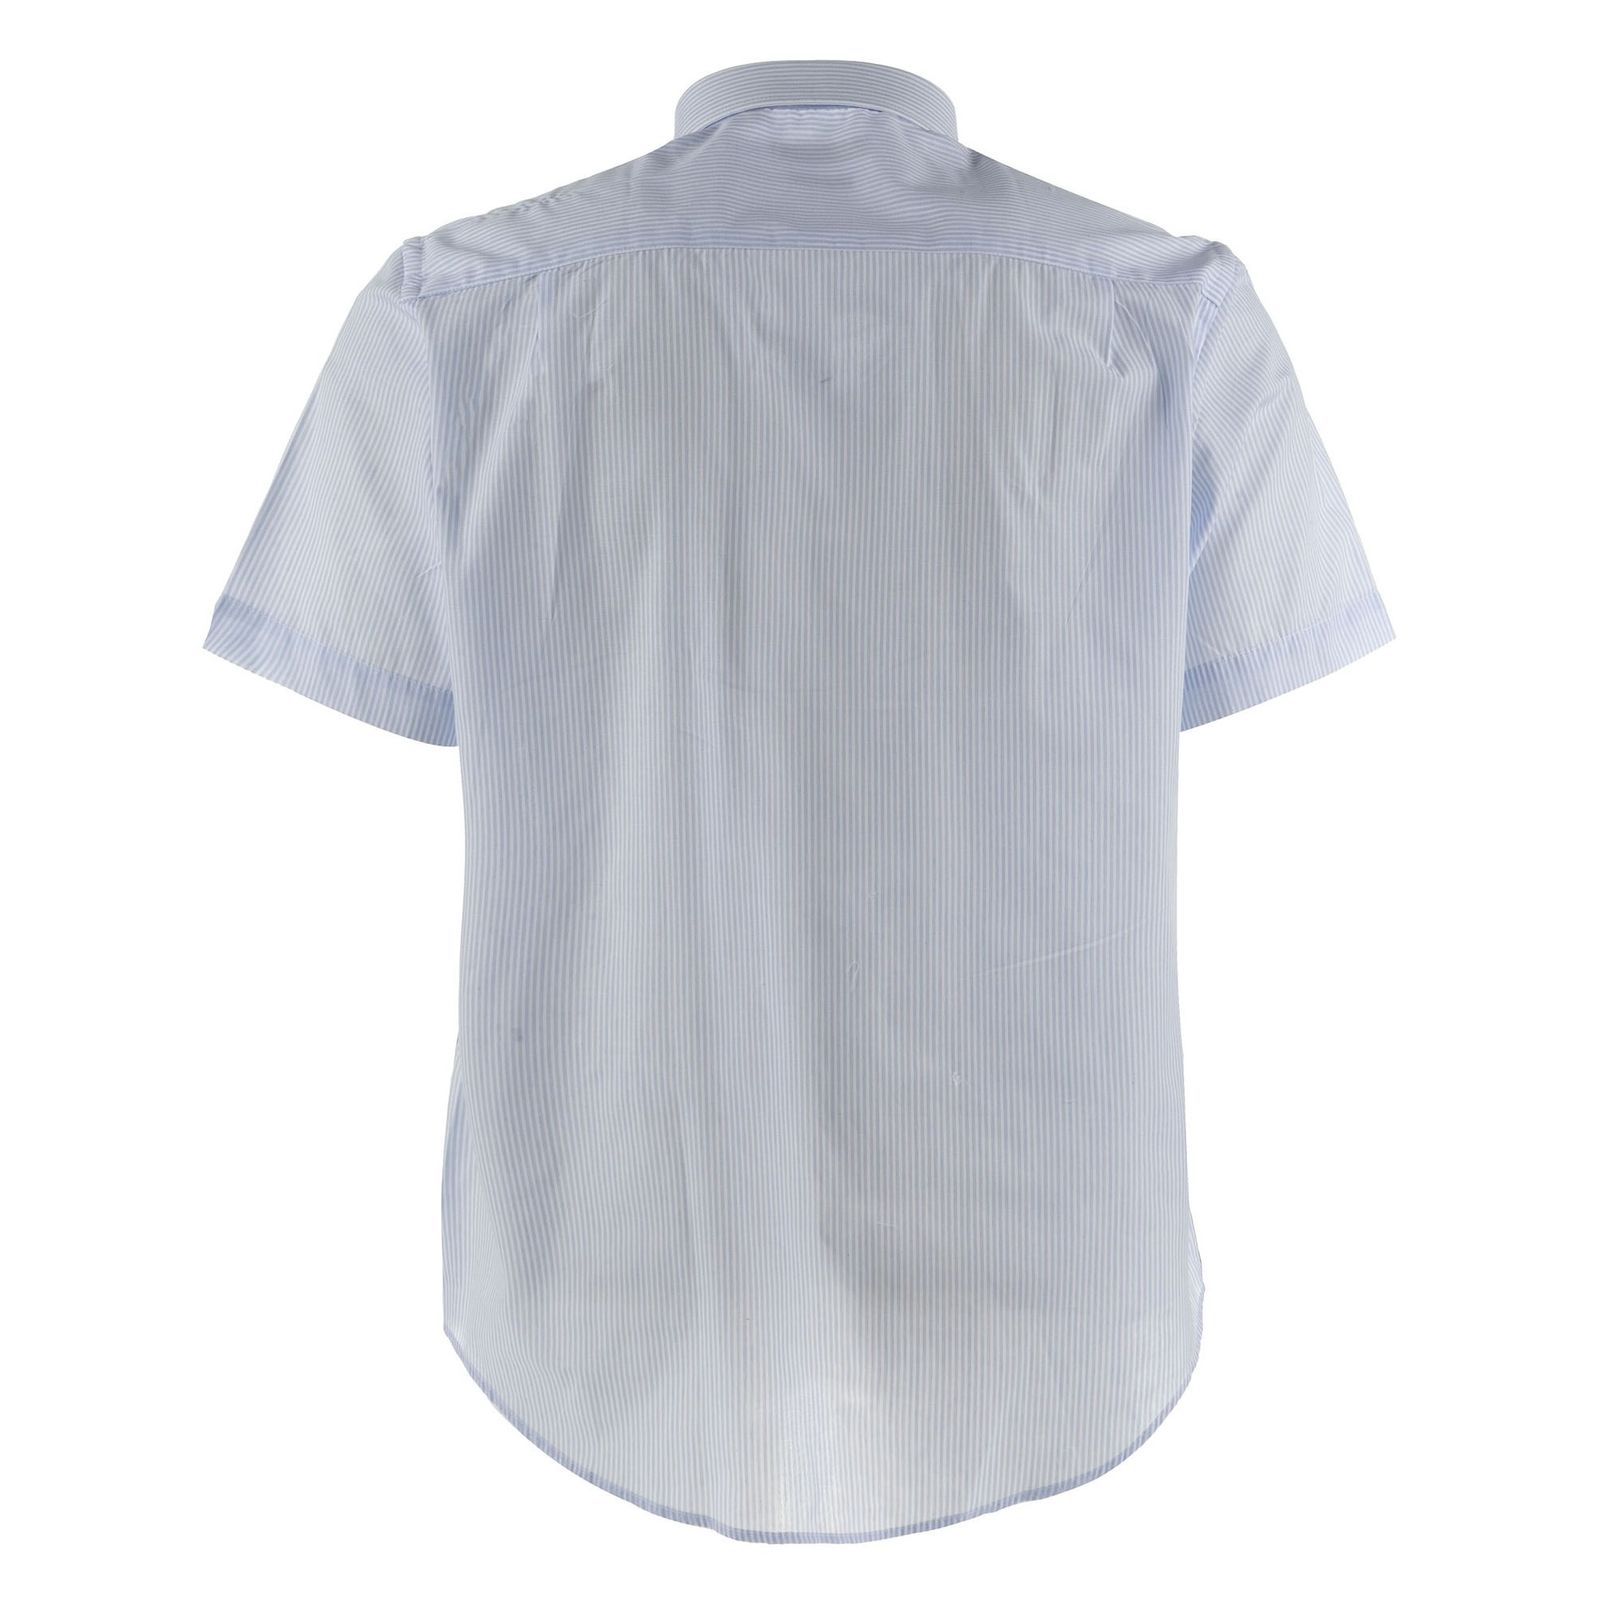 پیراهن آستین کوتاه مردانه - یوپیم - سفيد آبي - 3